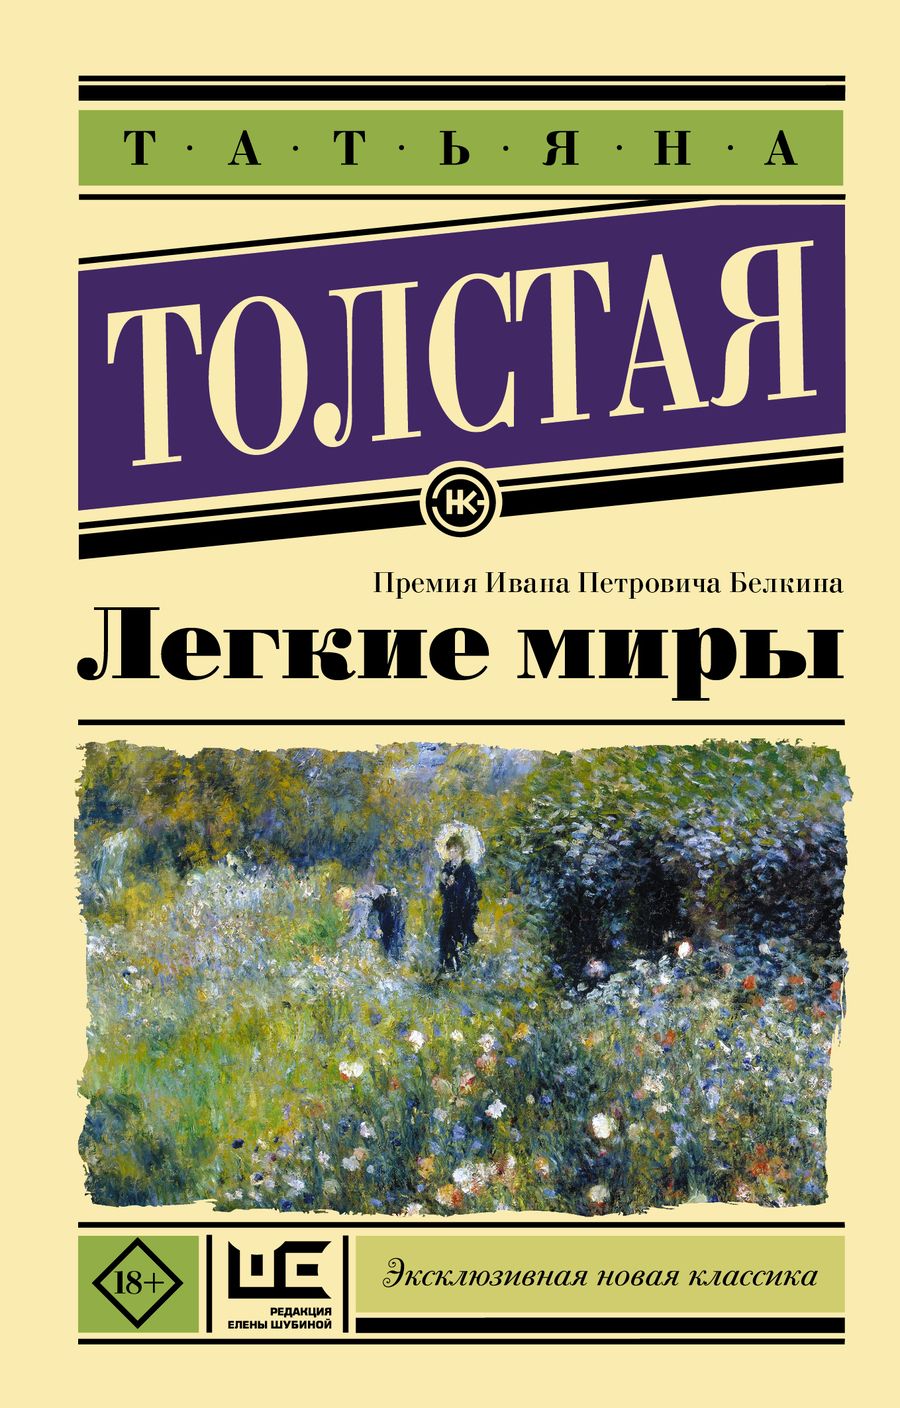 Обложка книги "Татьяна Толстая: Легкие миры"